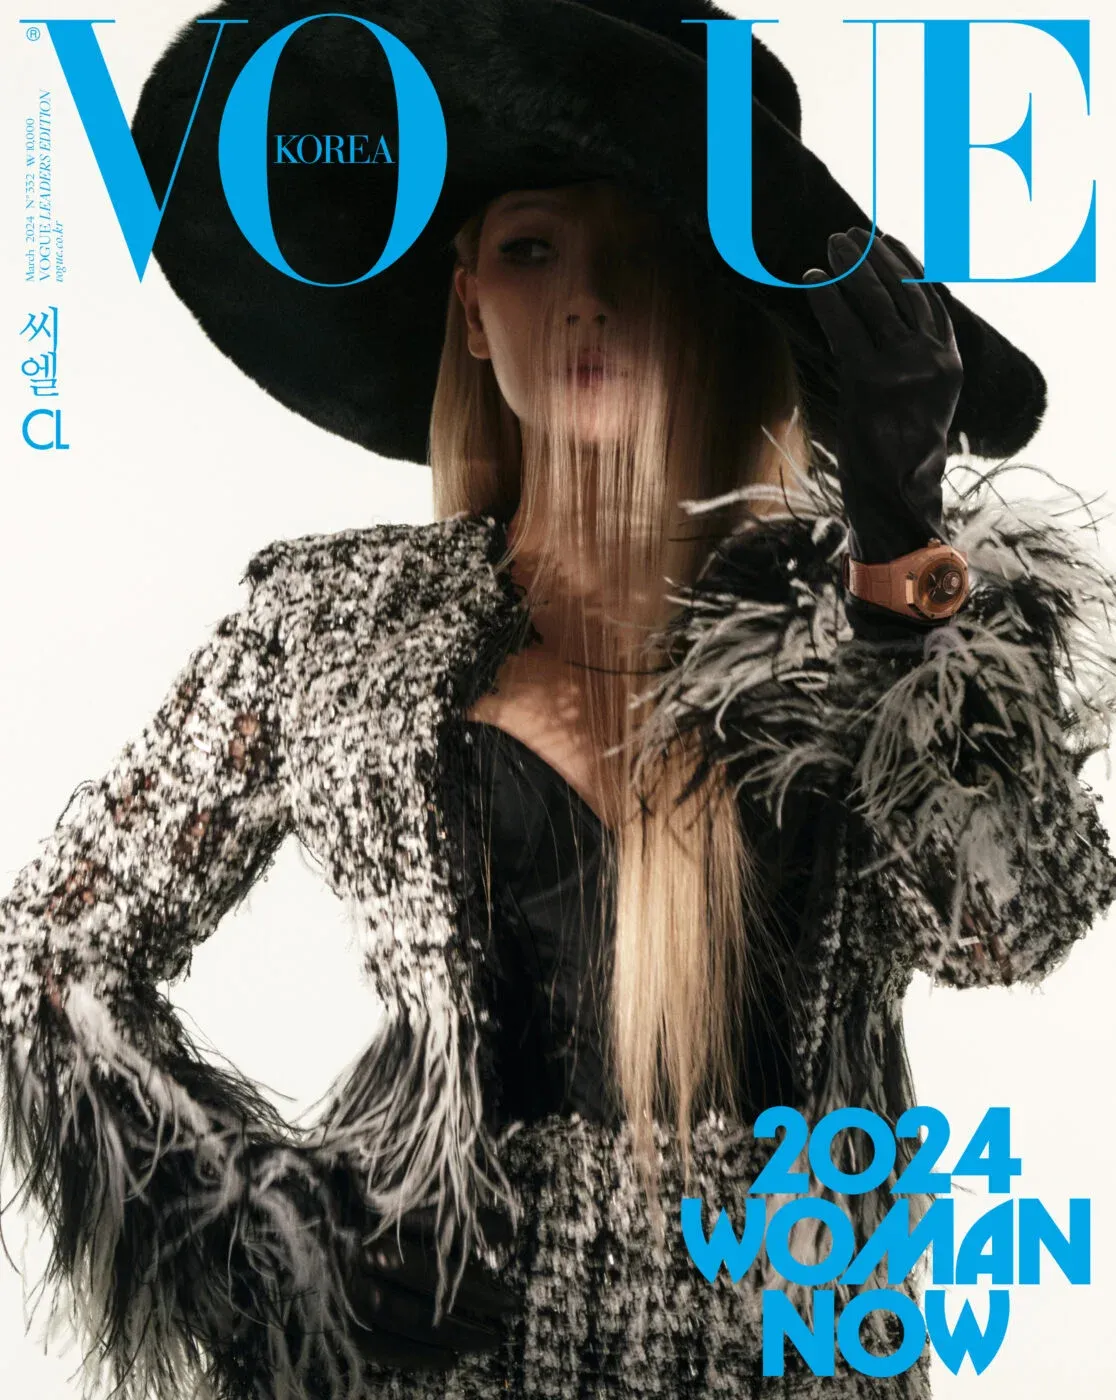 Vogue Corea elige a 24 mujeres que representan la generación contemporánea: aquí están todos los ídolos del K-Pop seleccionados